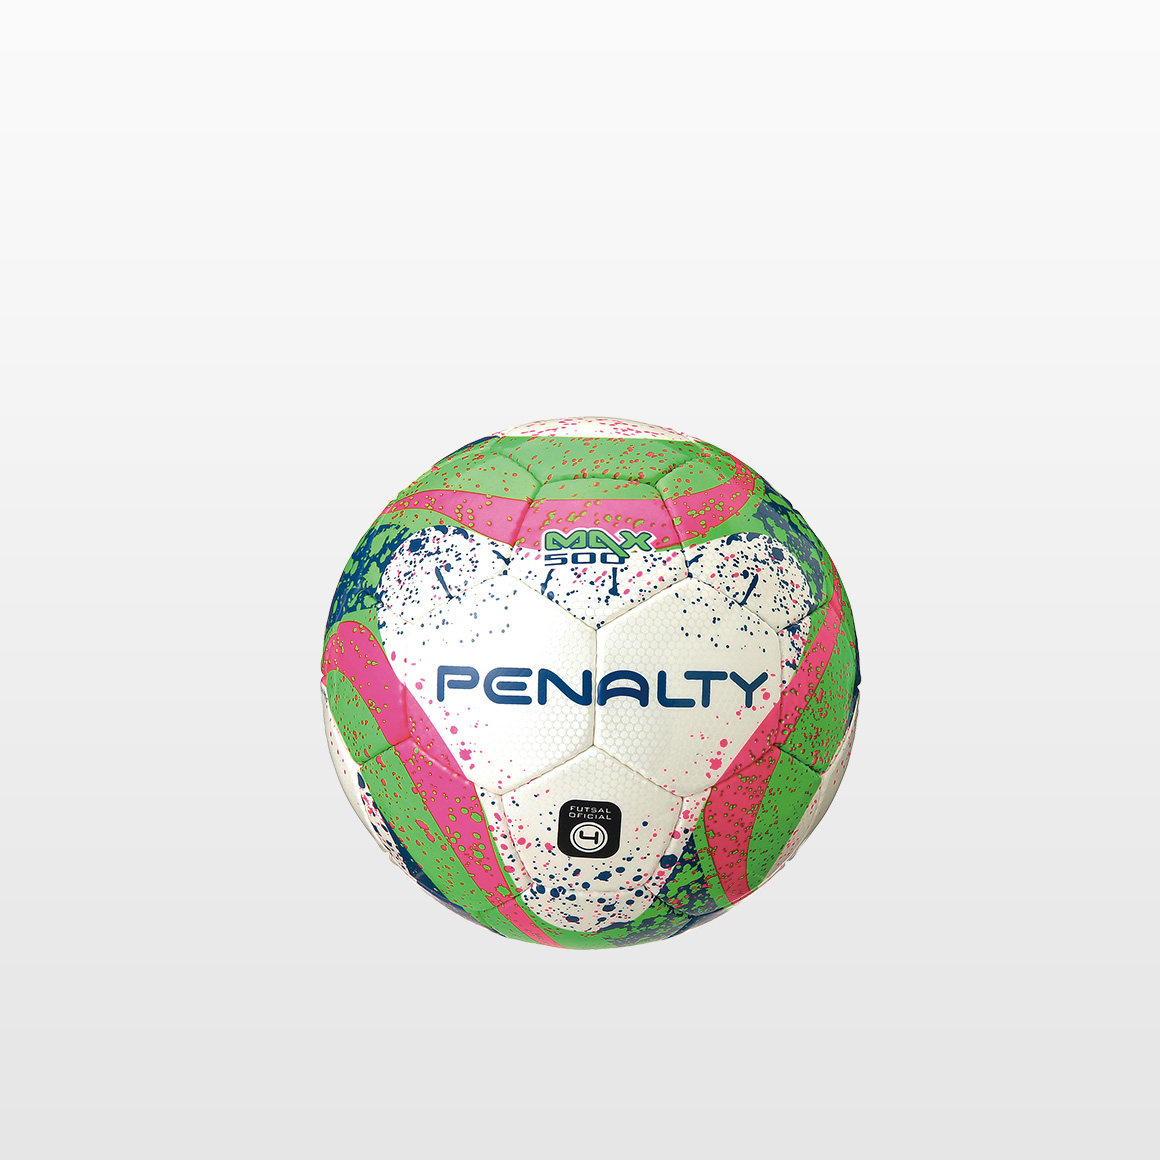 PENALTY フットサルボール / Max Ecoknit / ブラジル製